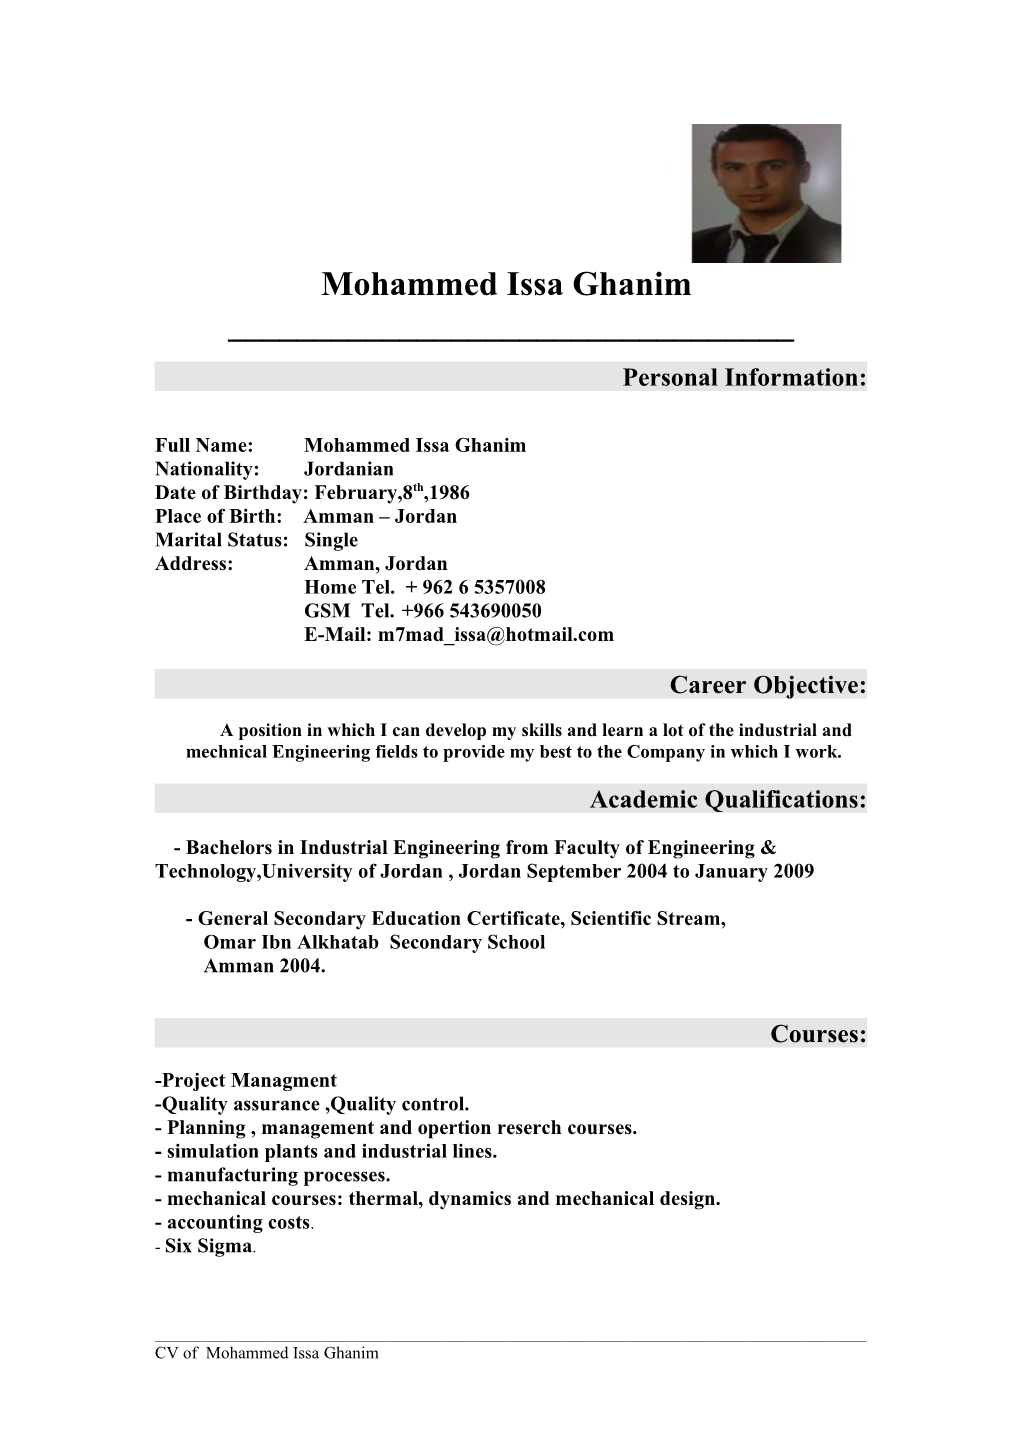 Full Name: Mohammed Issa Ghanim